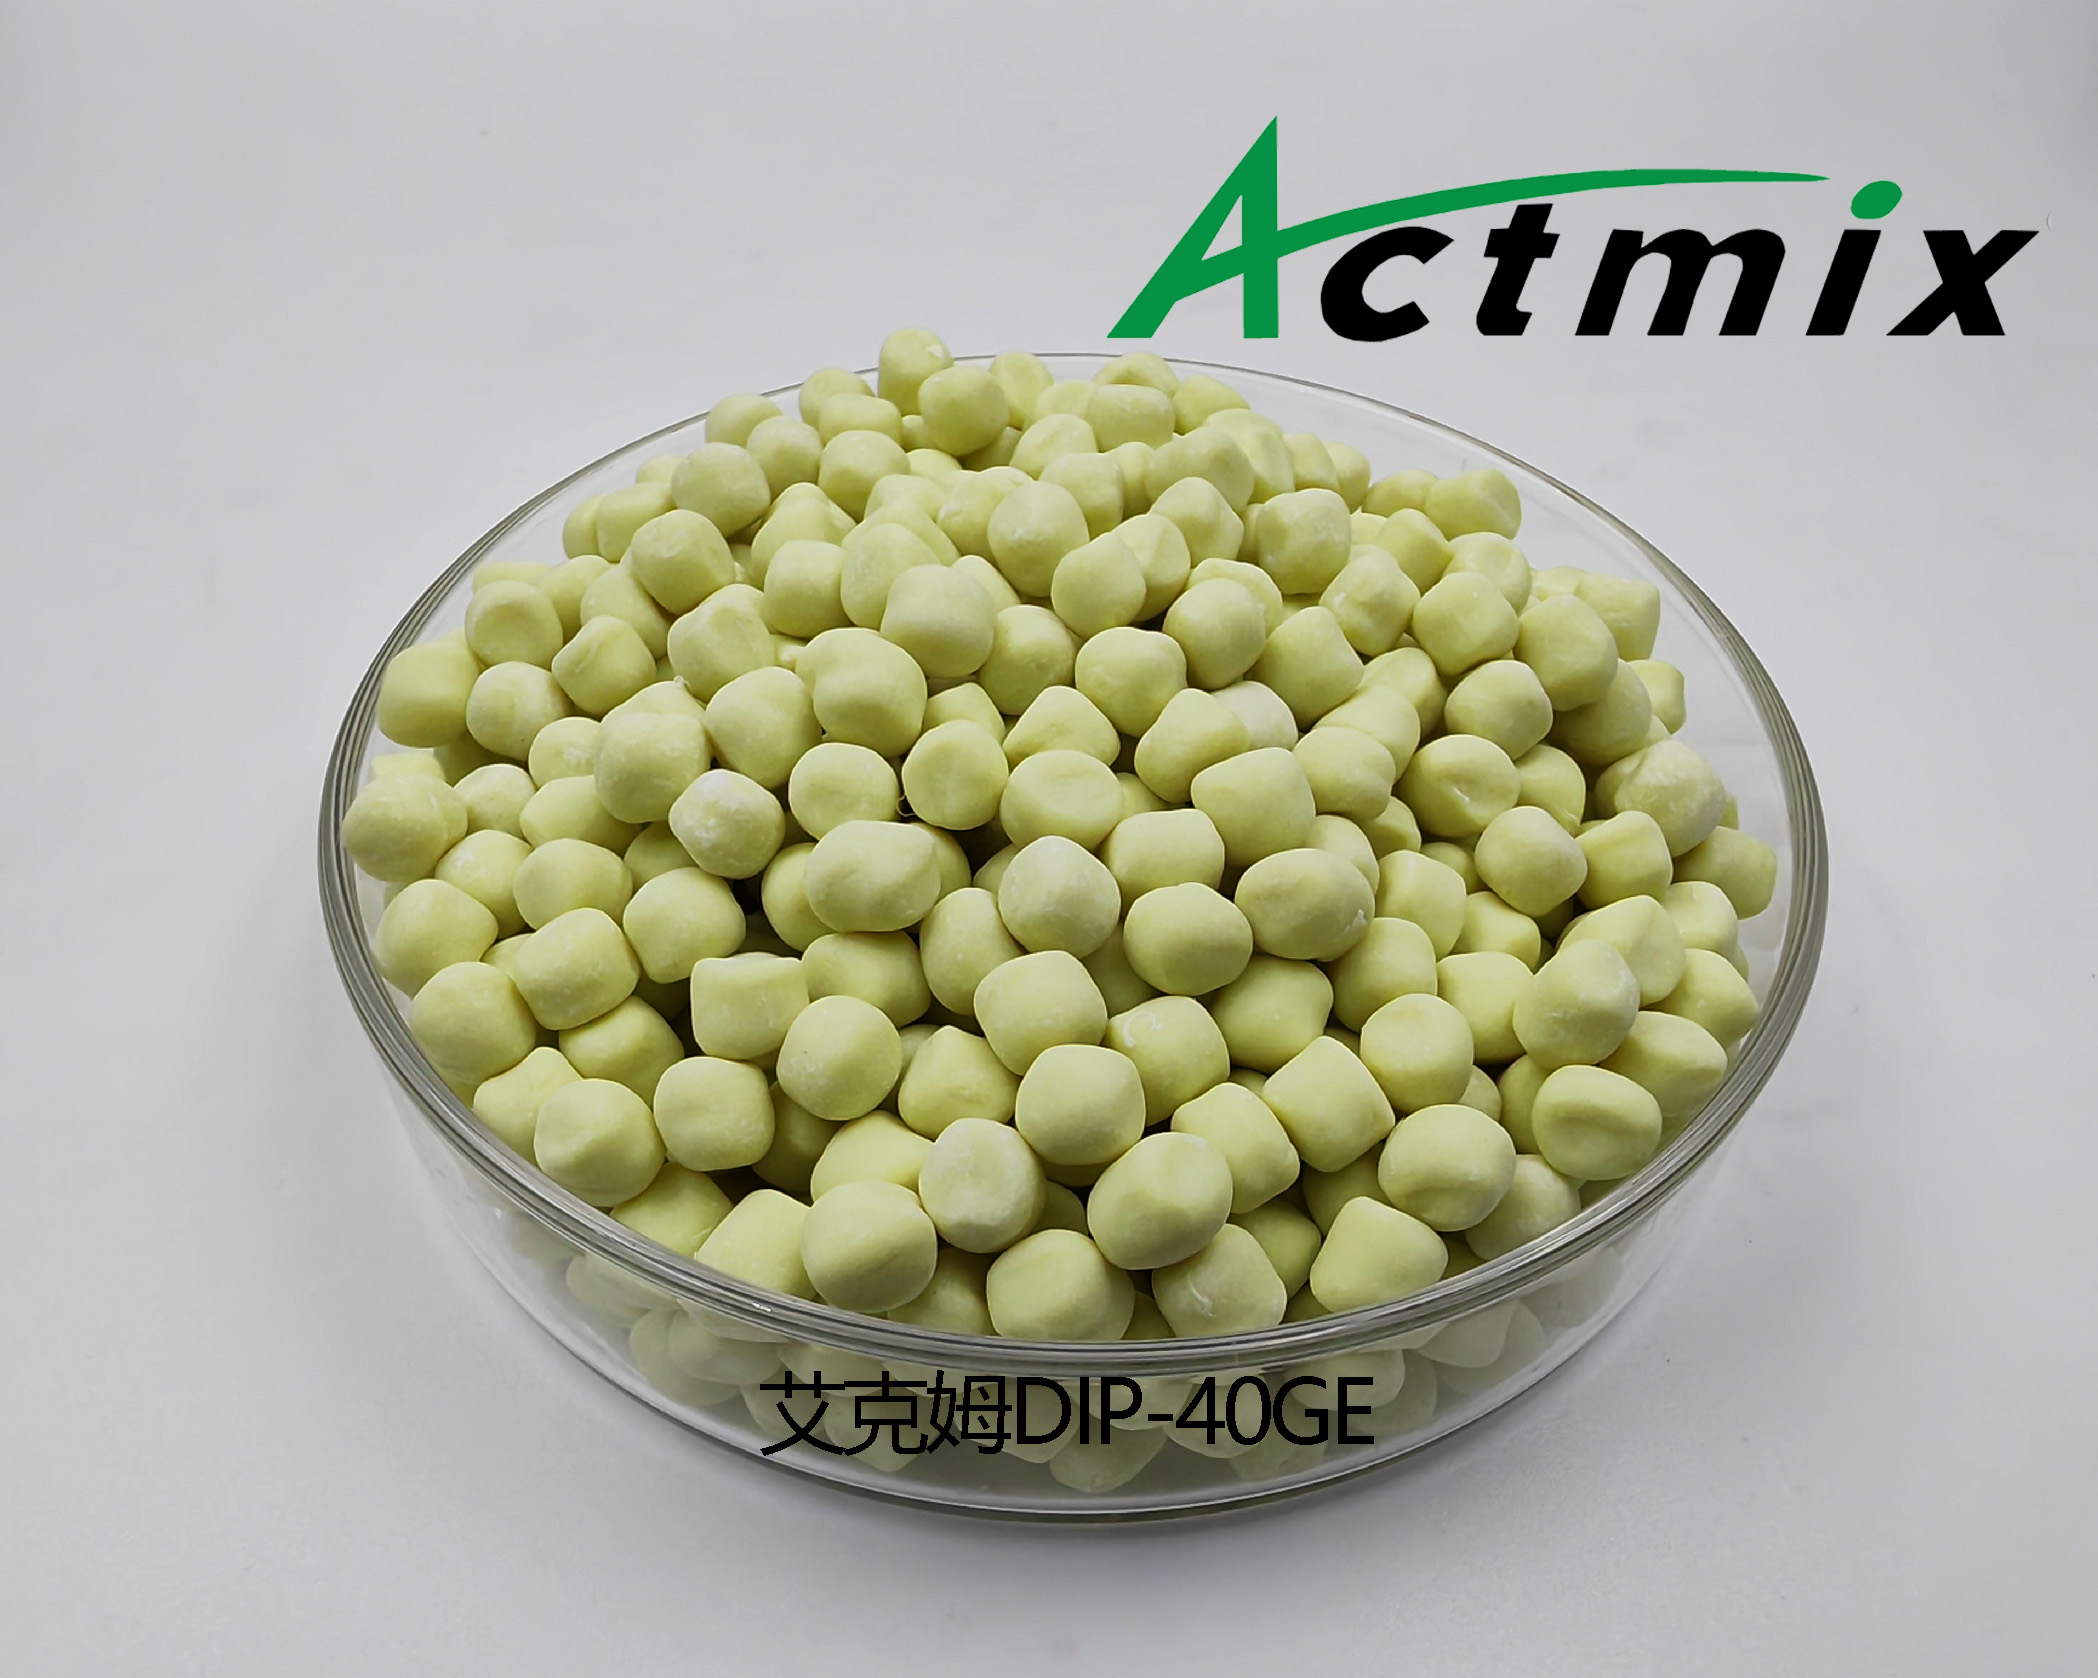 Actmix DIP-40GE